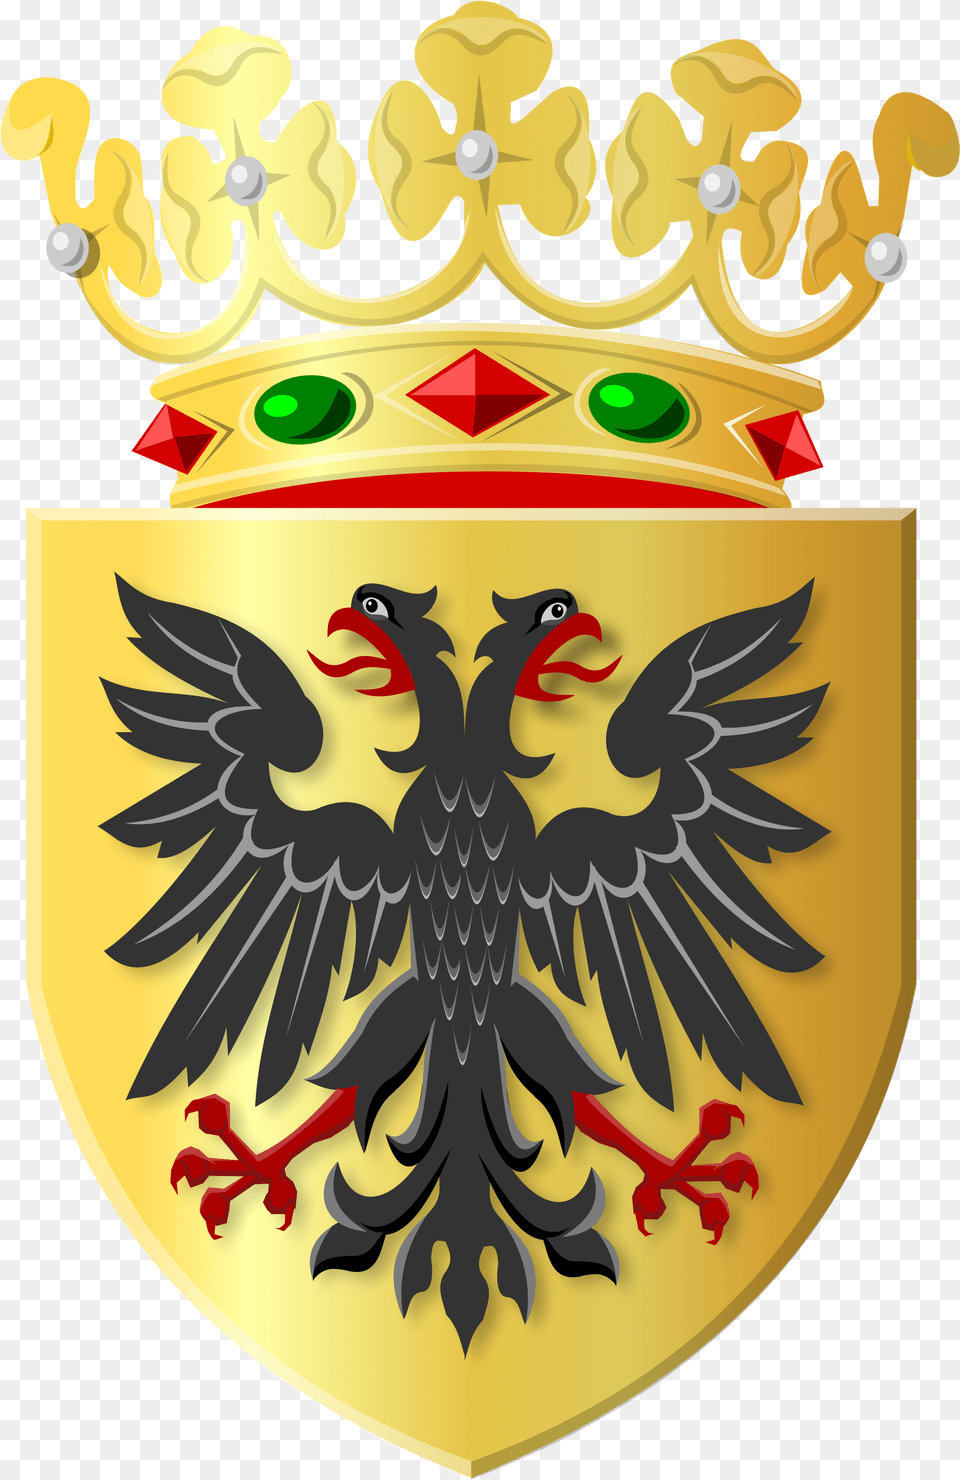 Golden Shield With Black Eagle And Golden Crown Gemeente Loppersum, Armor, Emblem, Symbol Free Transparent Png